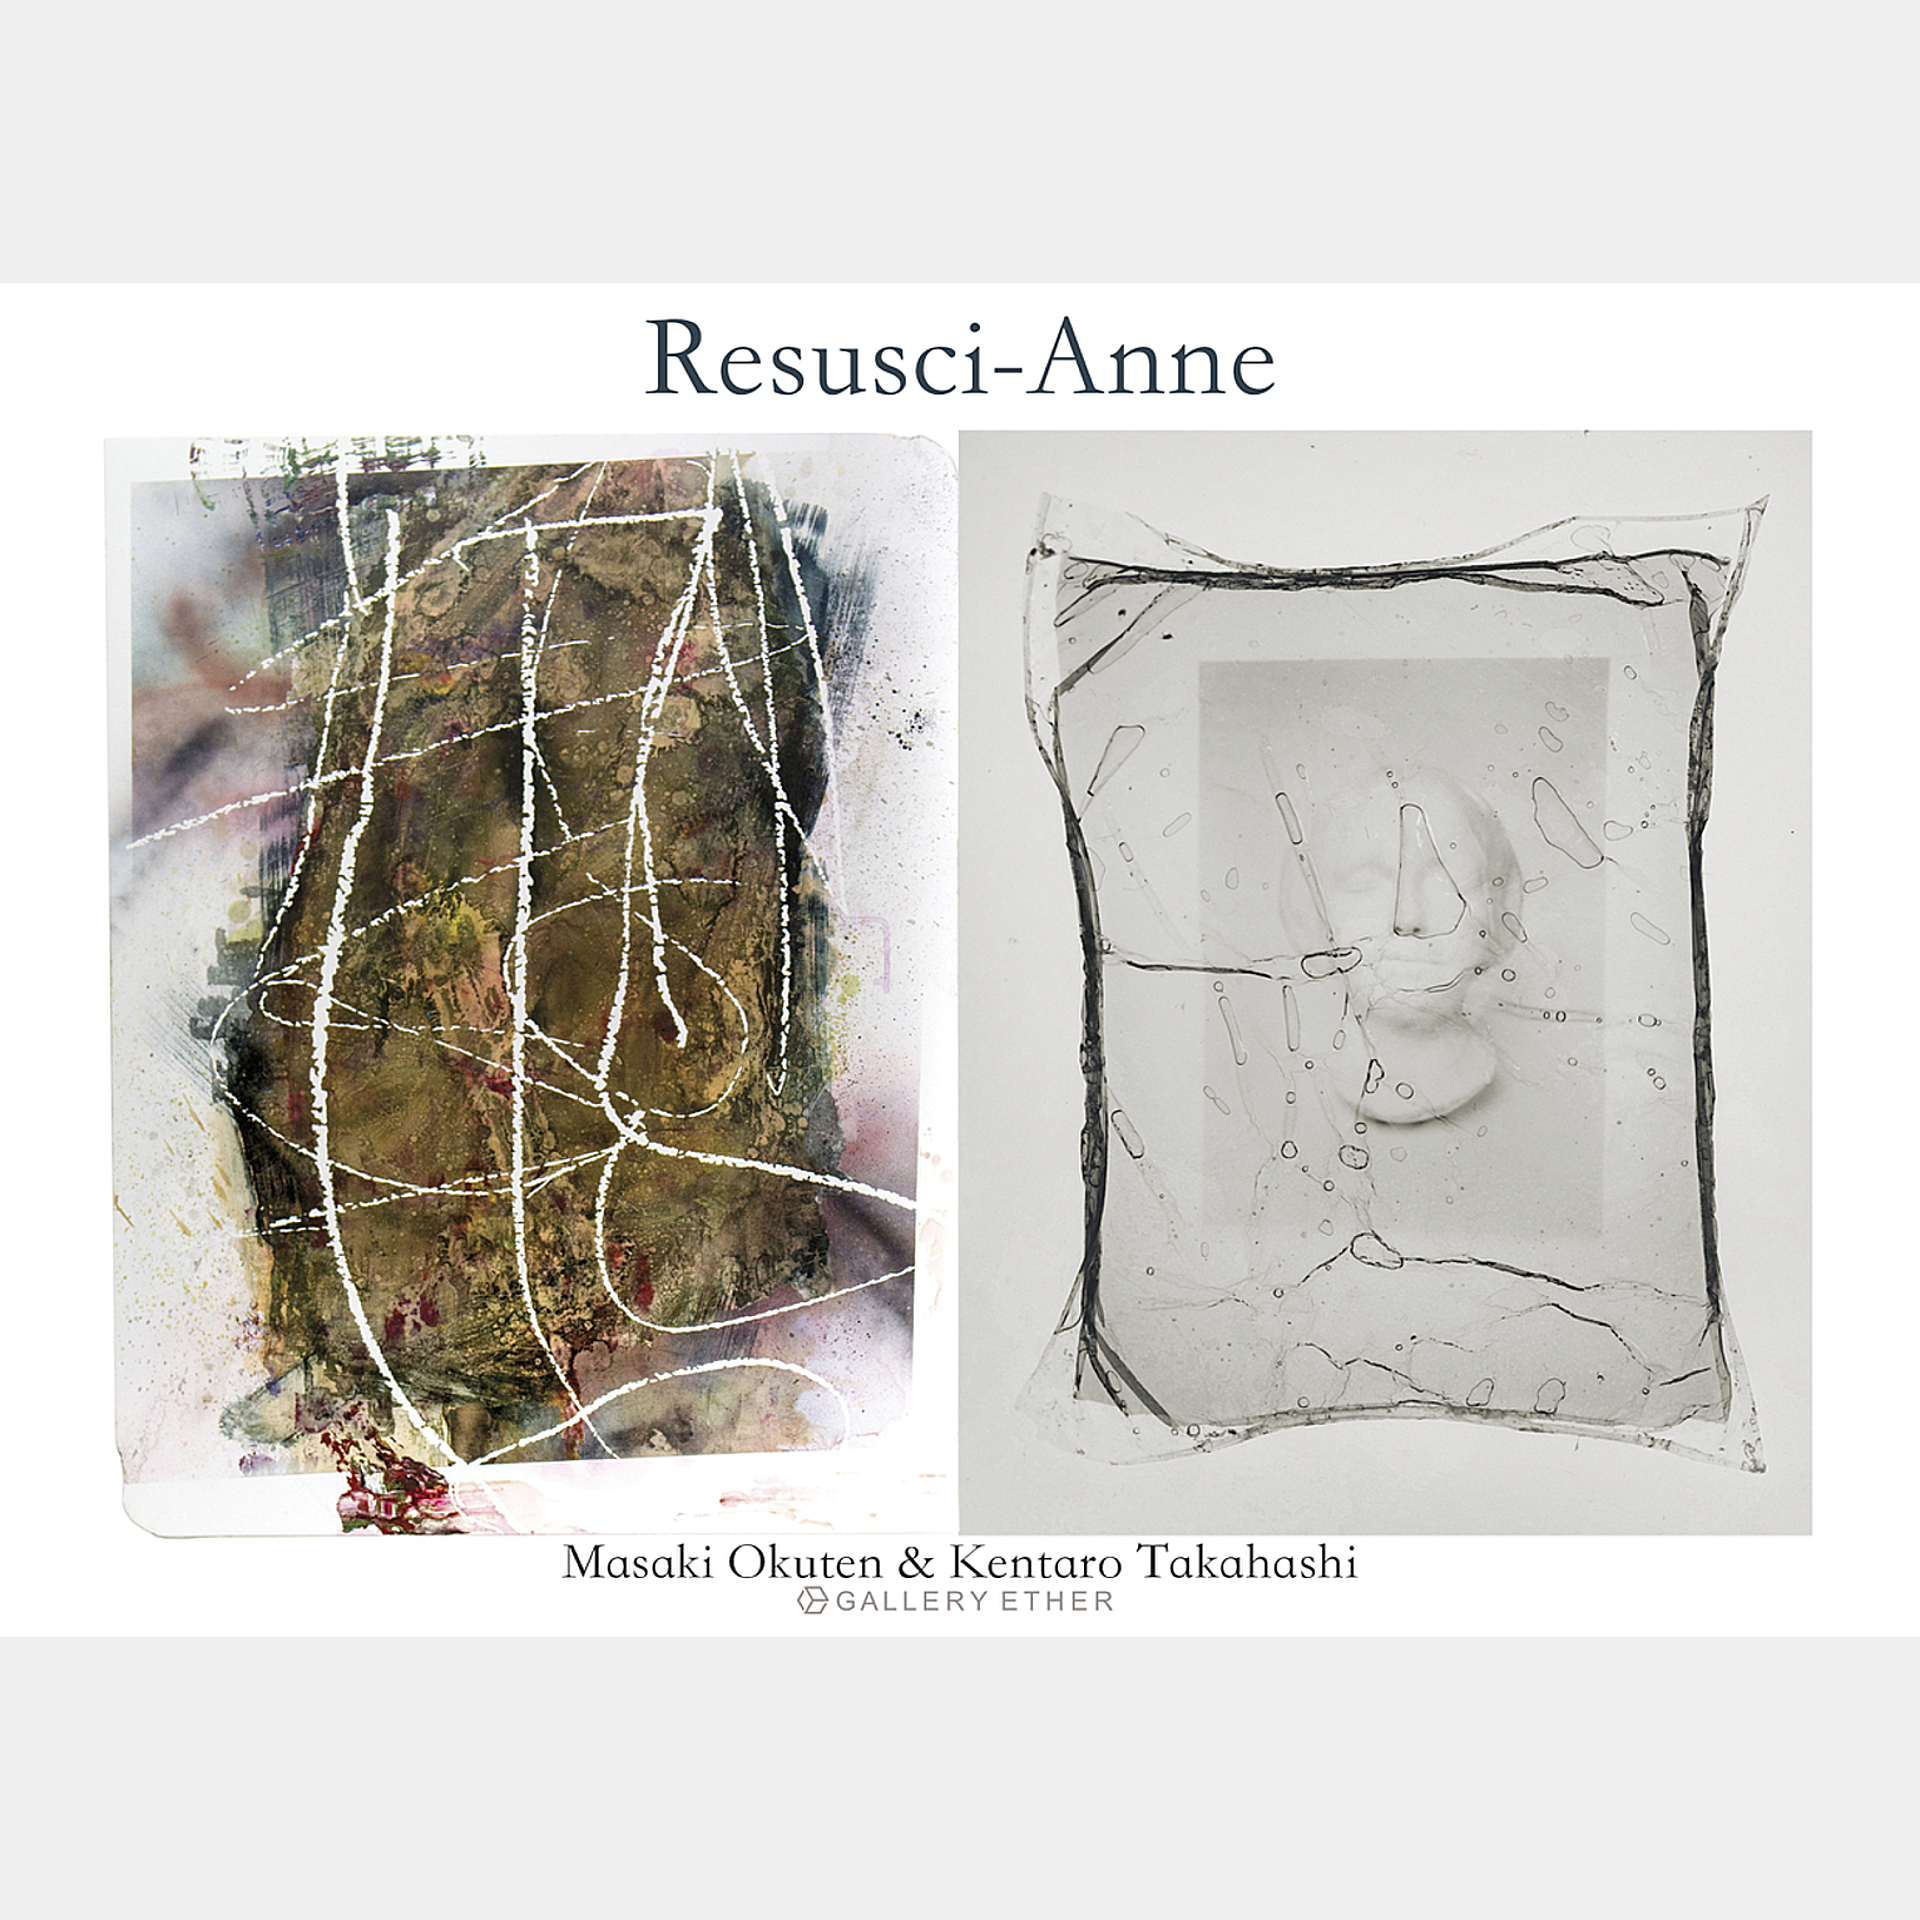 Resusci-Anne  (レサシアン)